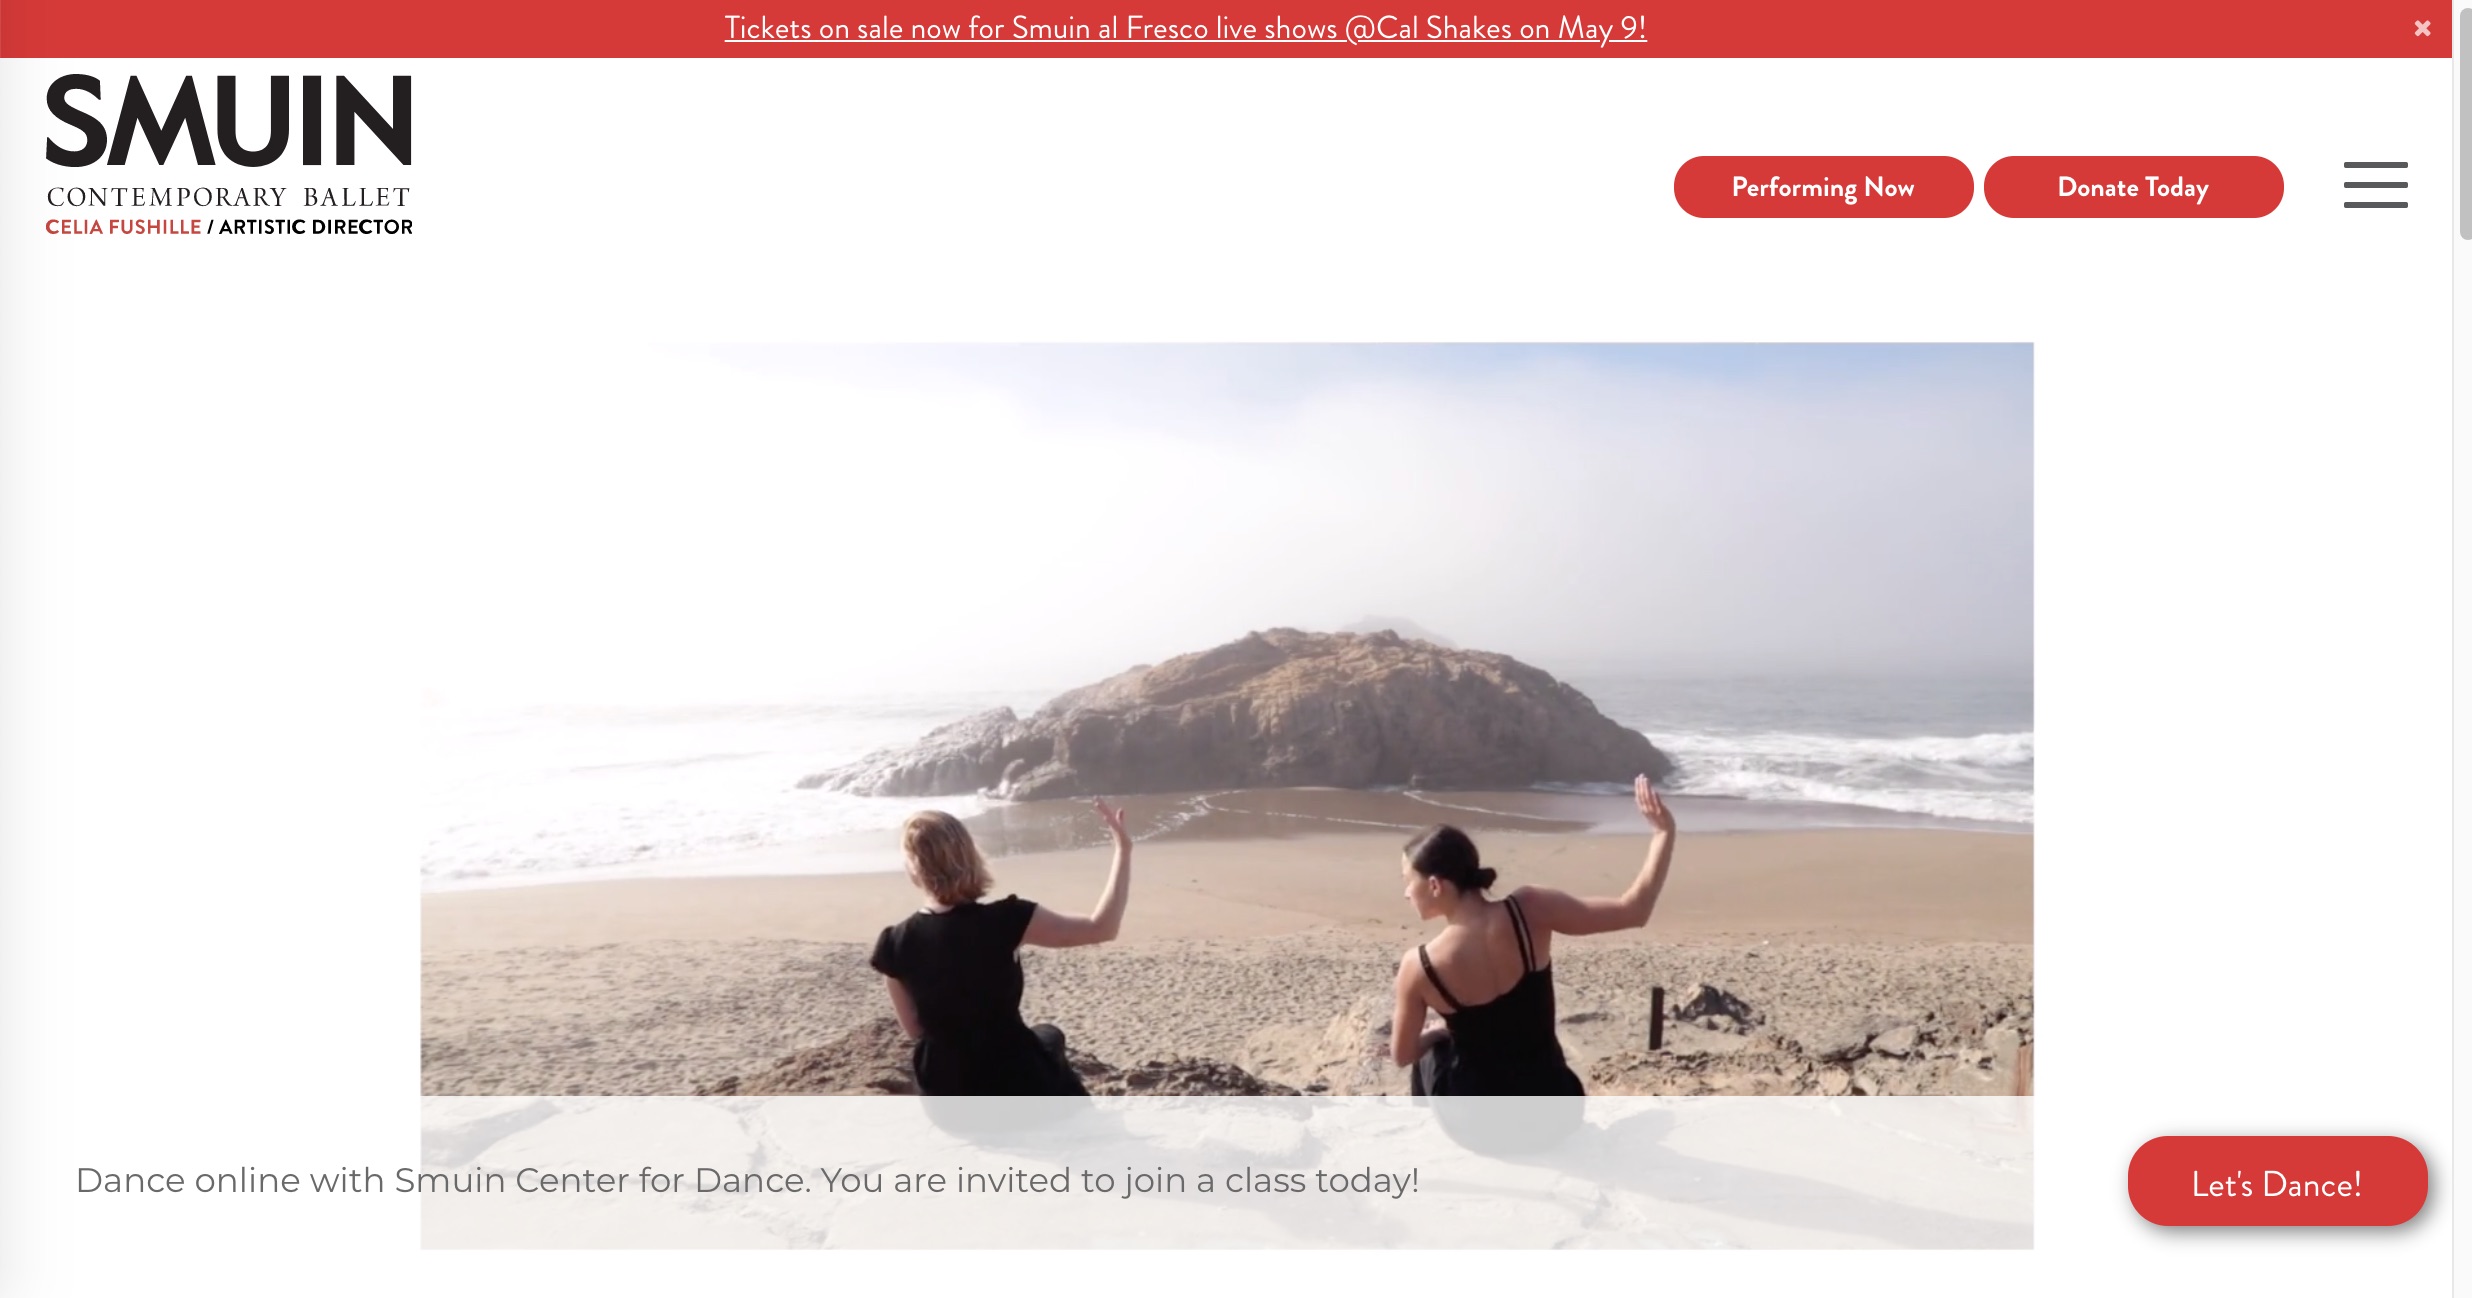 Smuin dancers seated at SF beach facing ocean